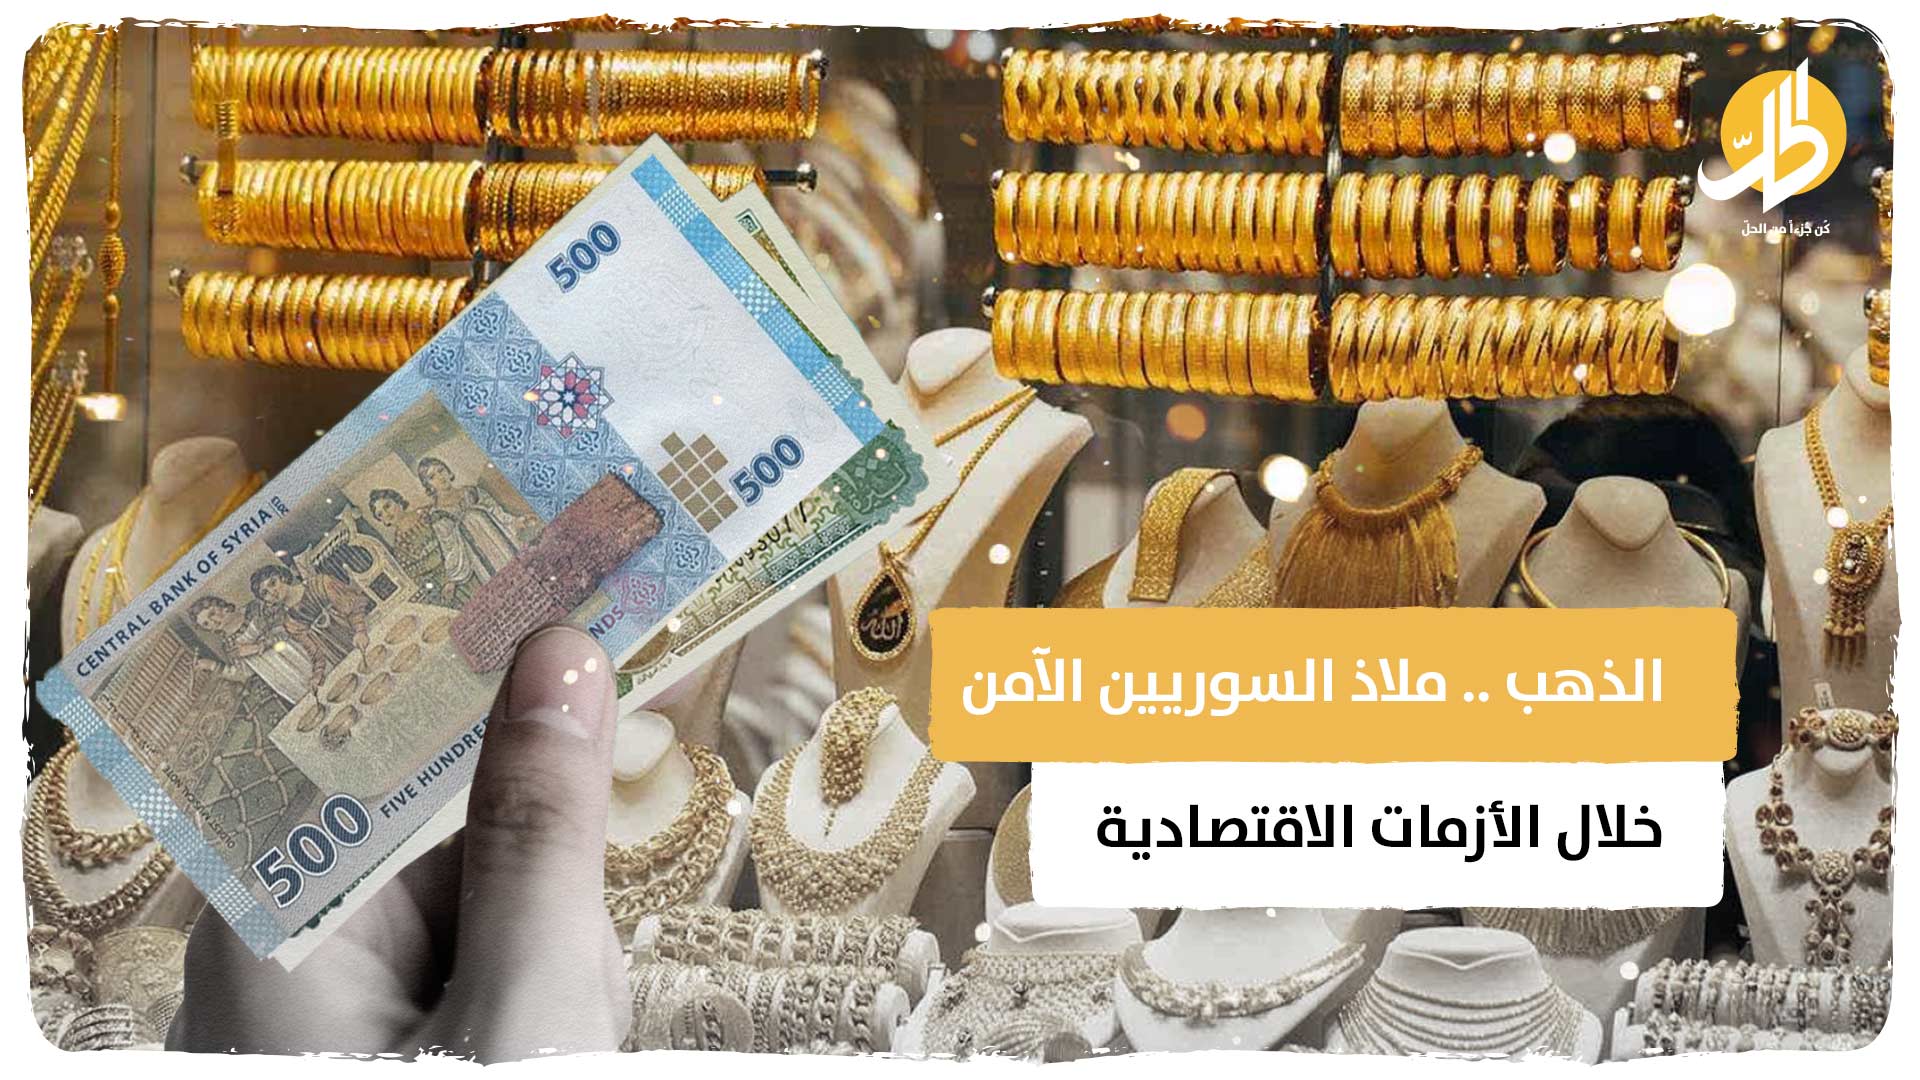 الذهب .. ملاذ السوريين الآمن خلال الأزمات الاقتصادية